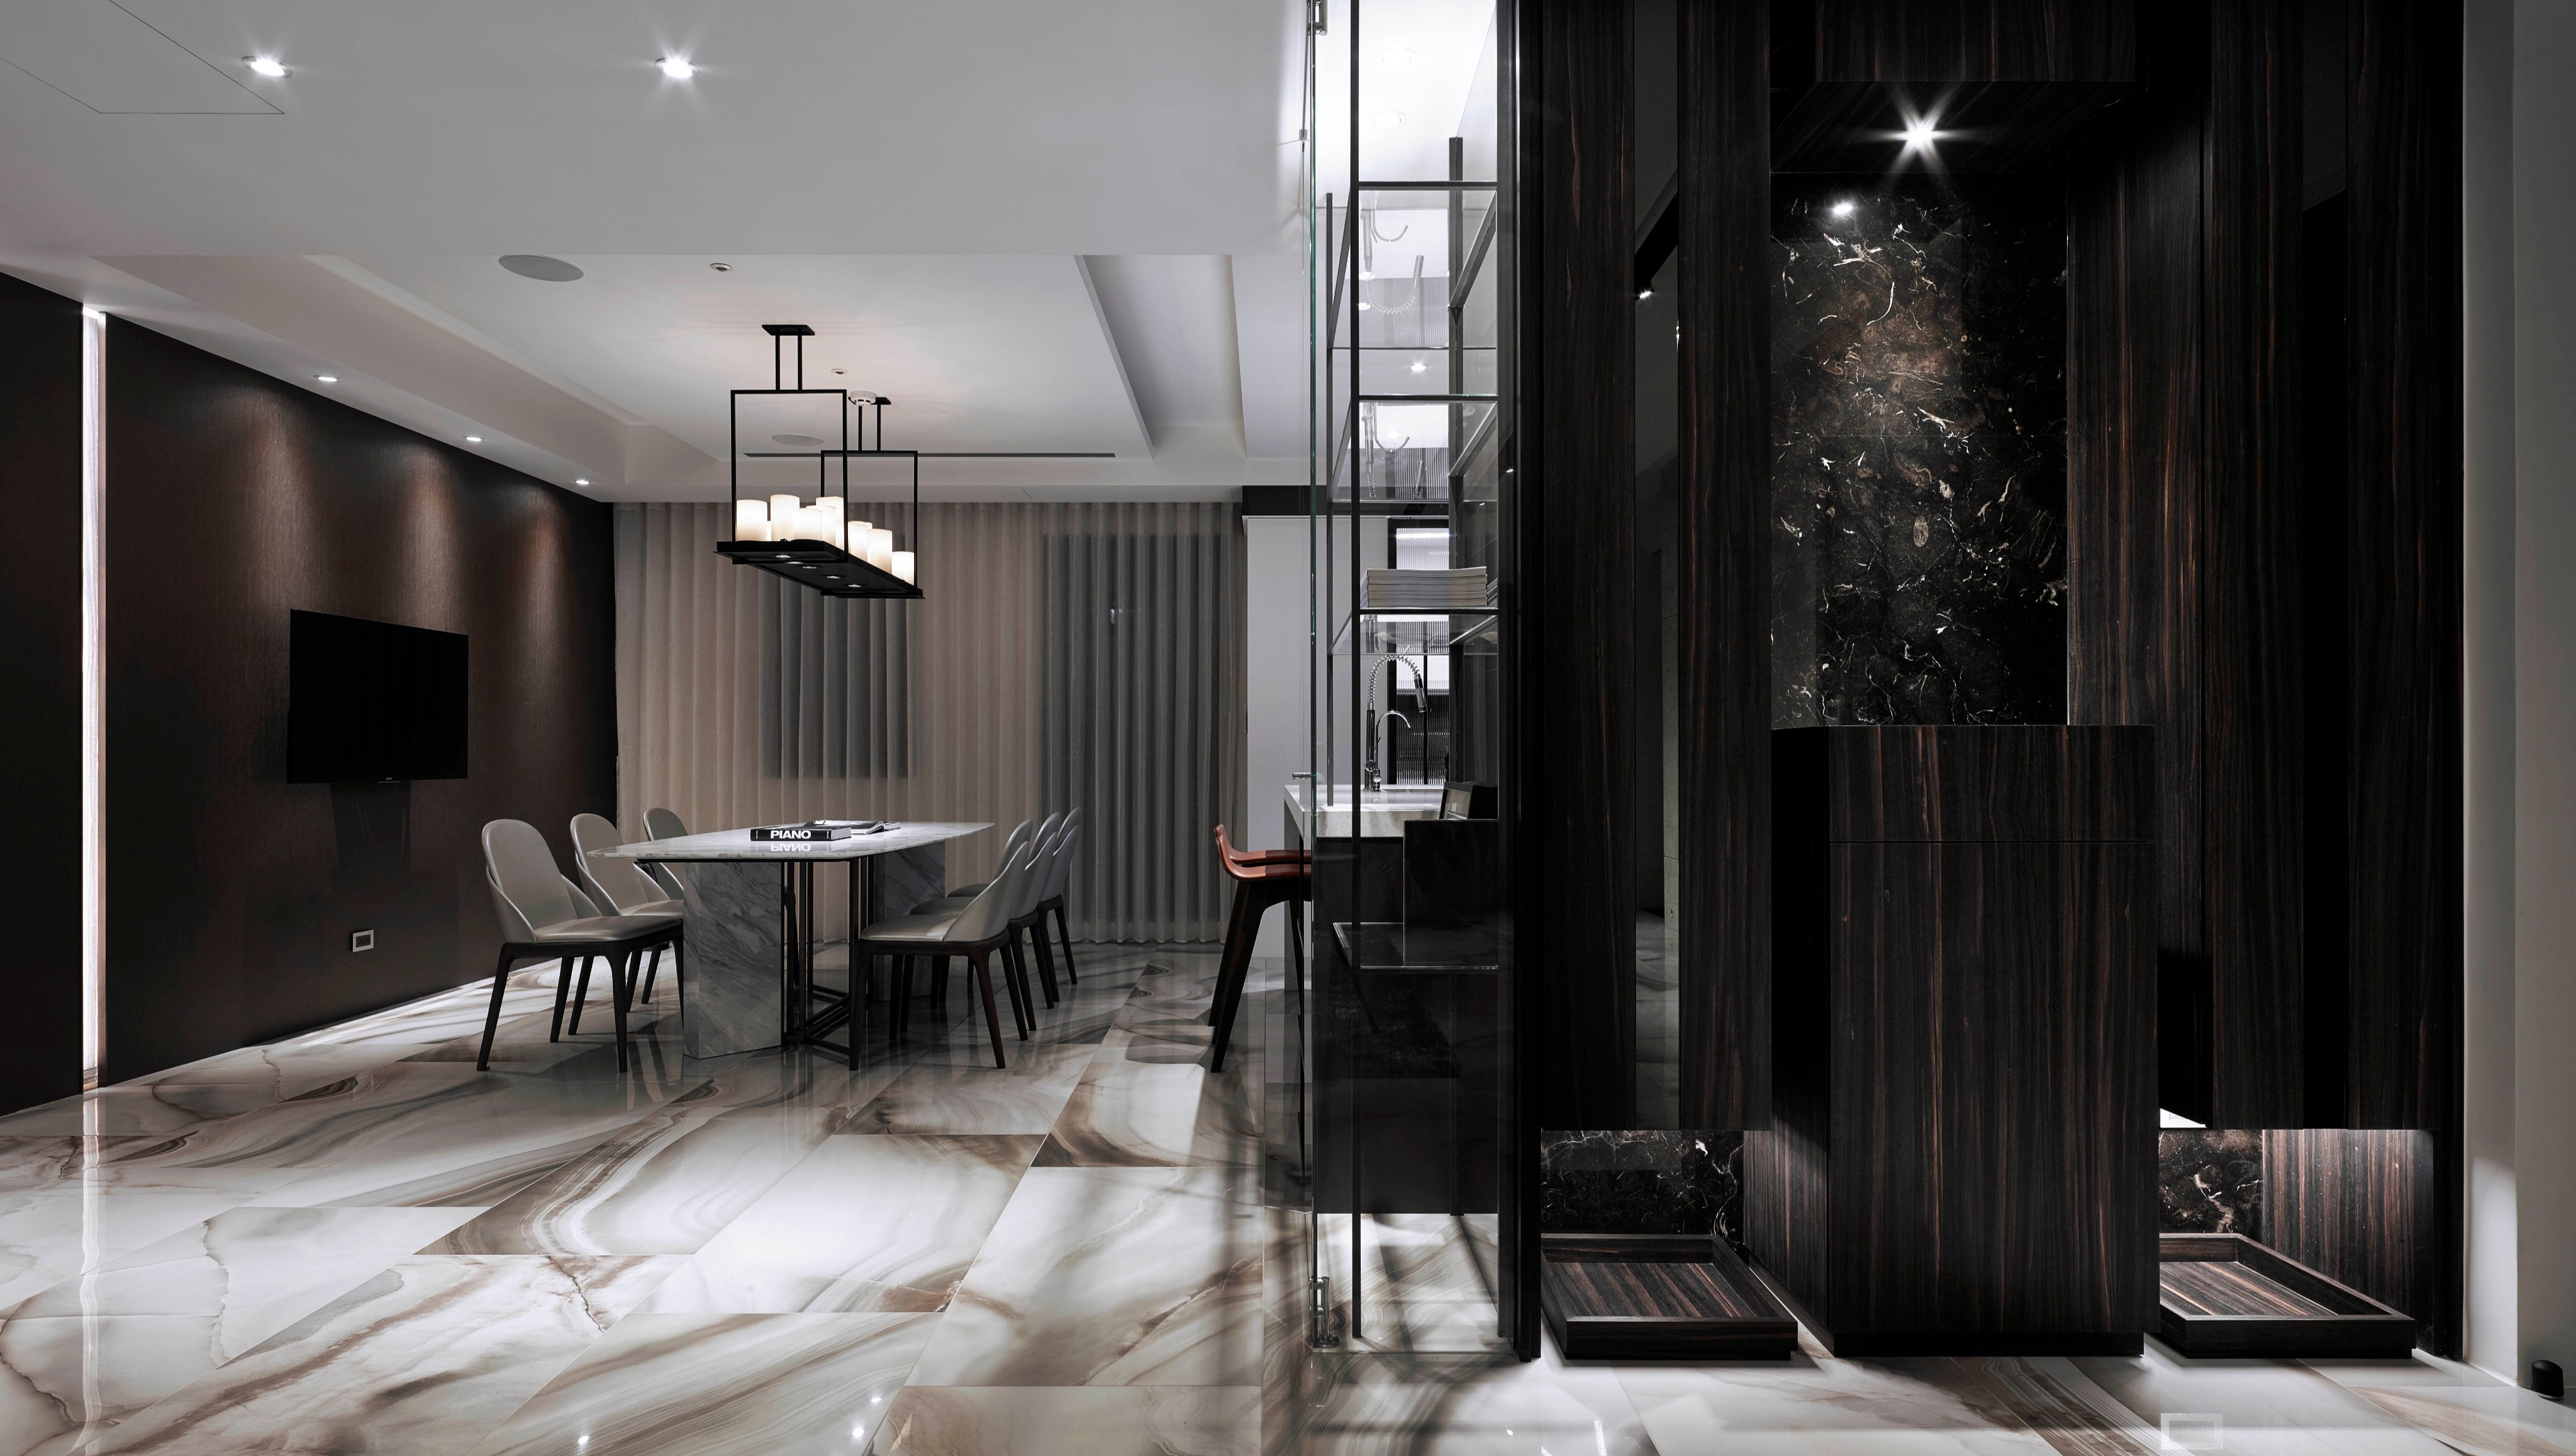 室內設計視頻 光與空間交織的饗宴 90坪頂級閣樓豪宅